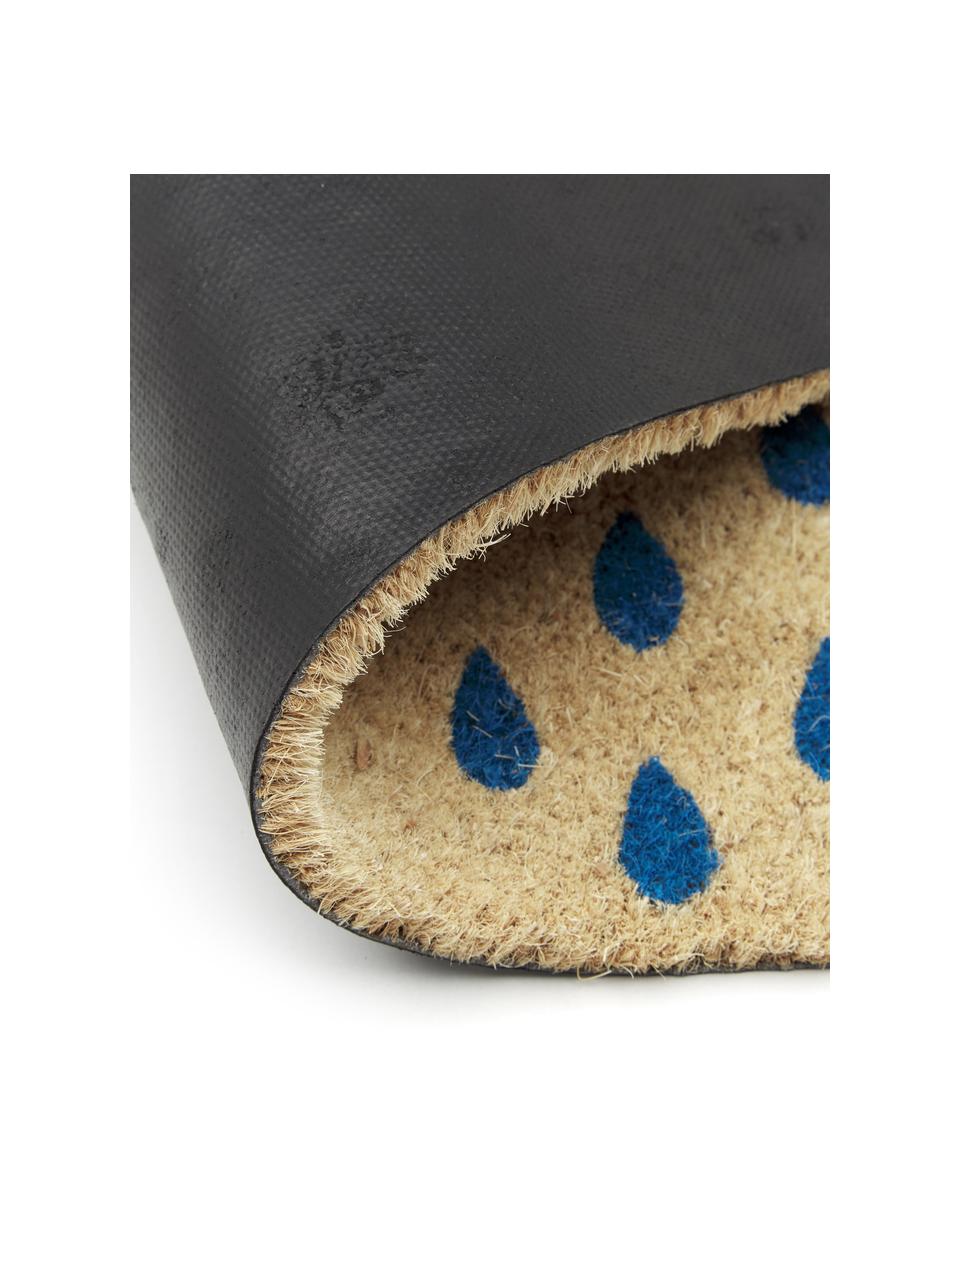 Fußmatte Rainy, Oberseite: Kokosfaser, Unterseite: Kunststoff (PVC), Hellbeige, Blau, Rot, 45 x 75 cm